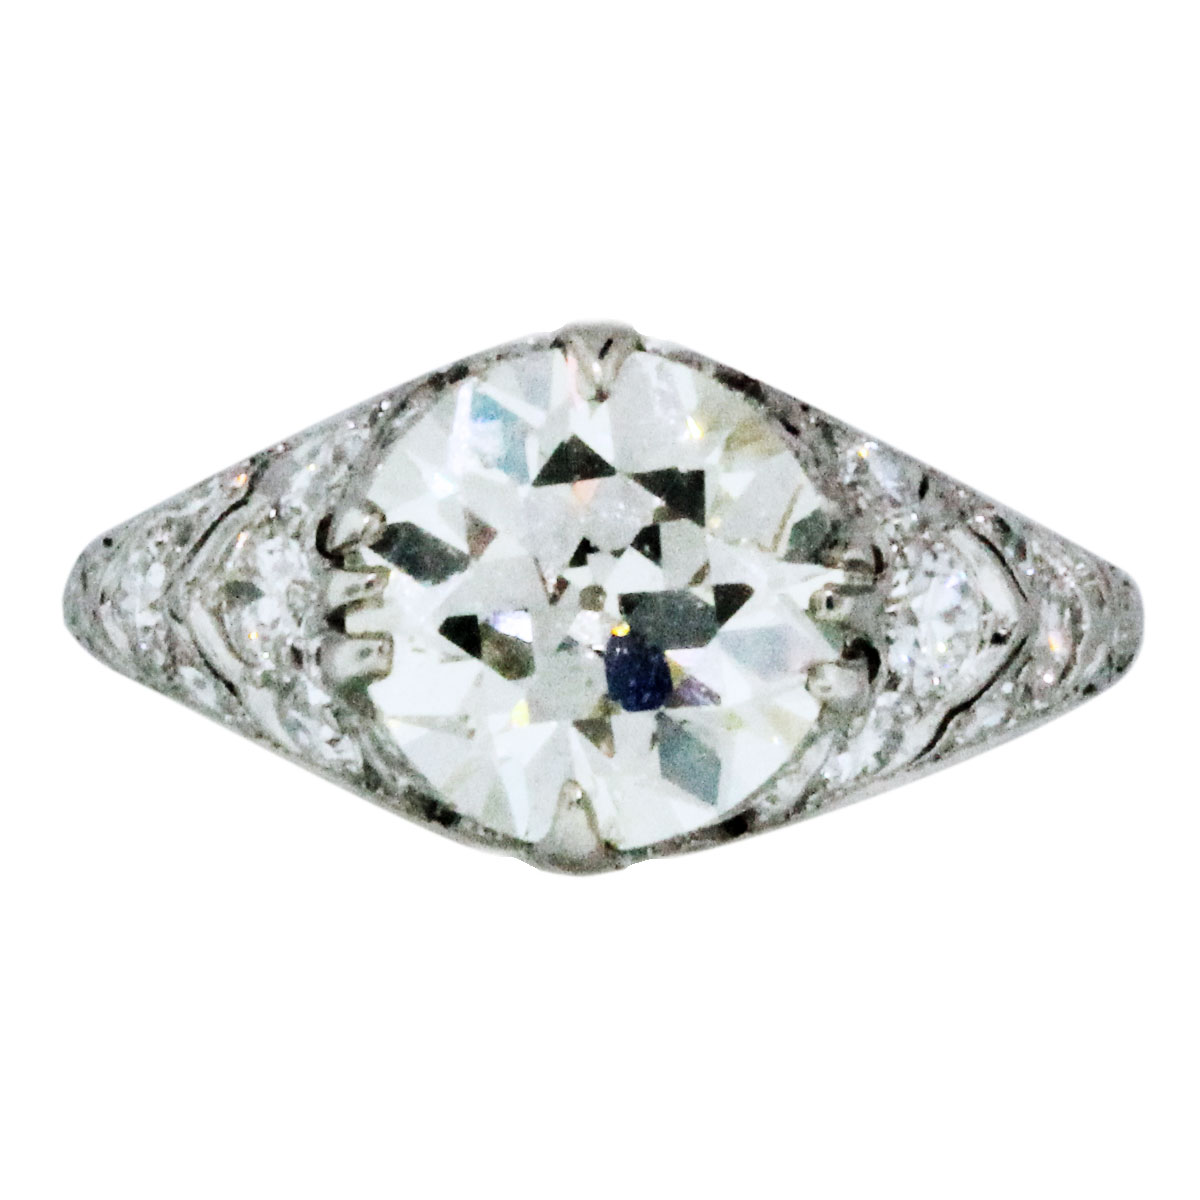 2 carat antique diamond engagement ring